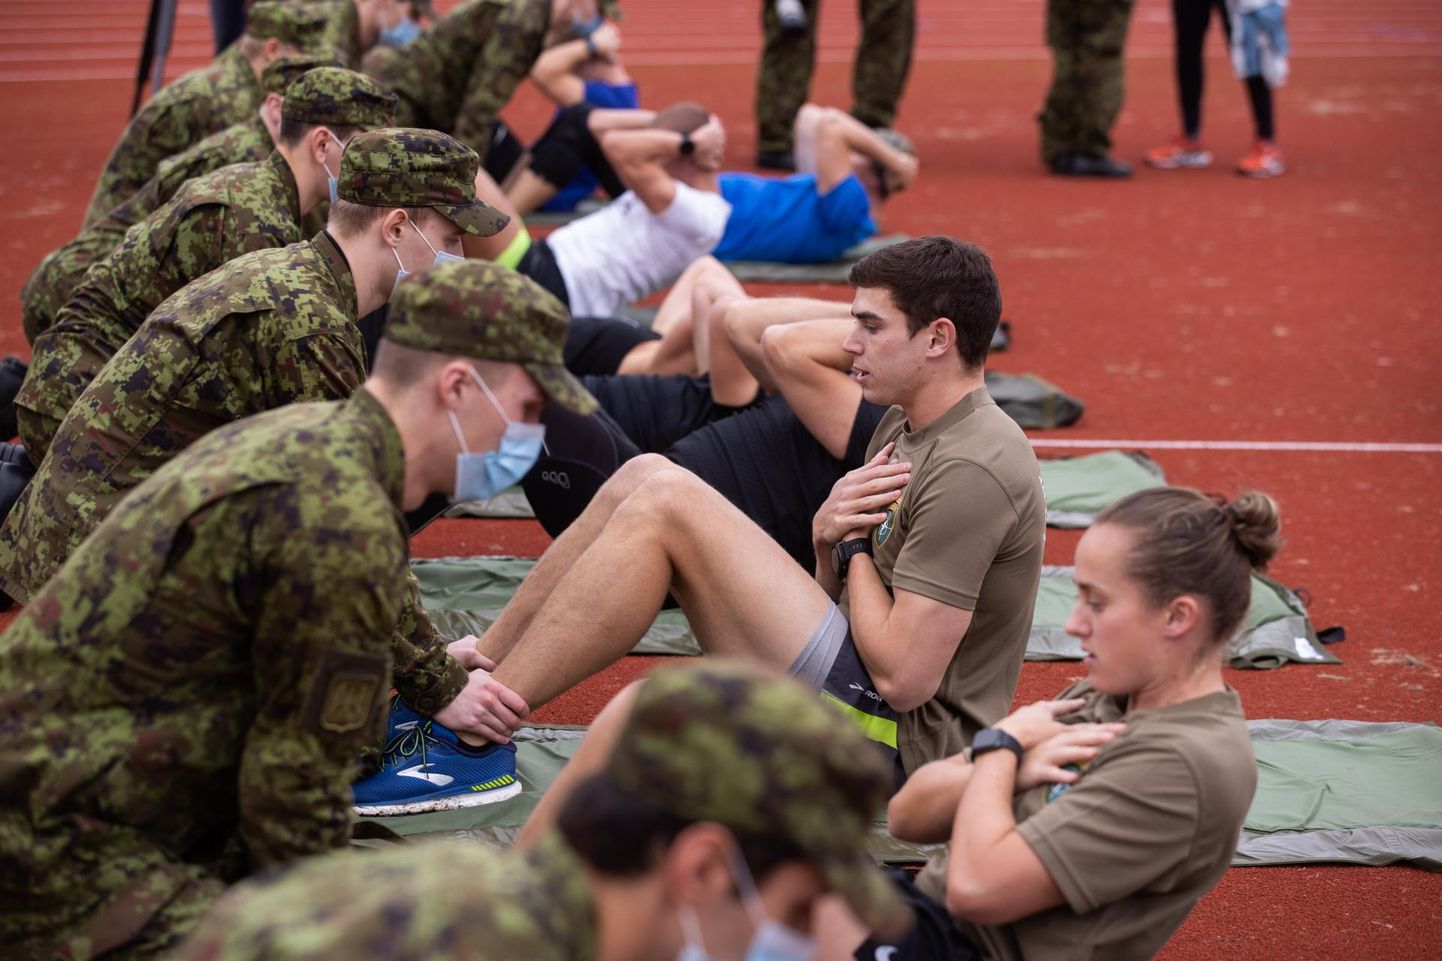 Möödunud aastal tegid kaitseväe spordihommikul Tallinnas NATO testi tuntud inimesed. 